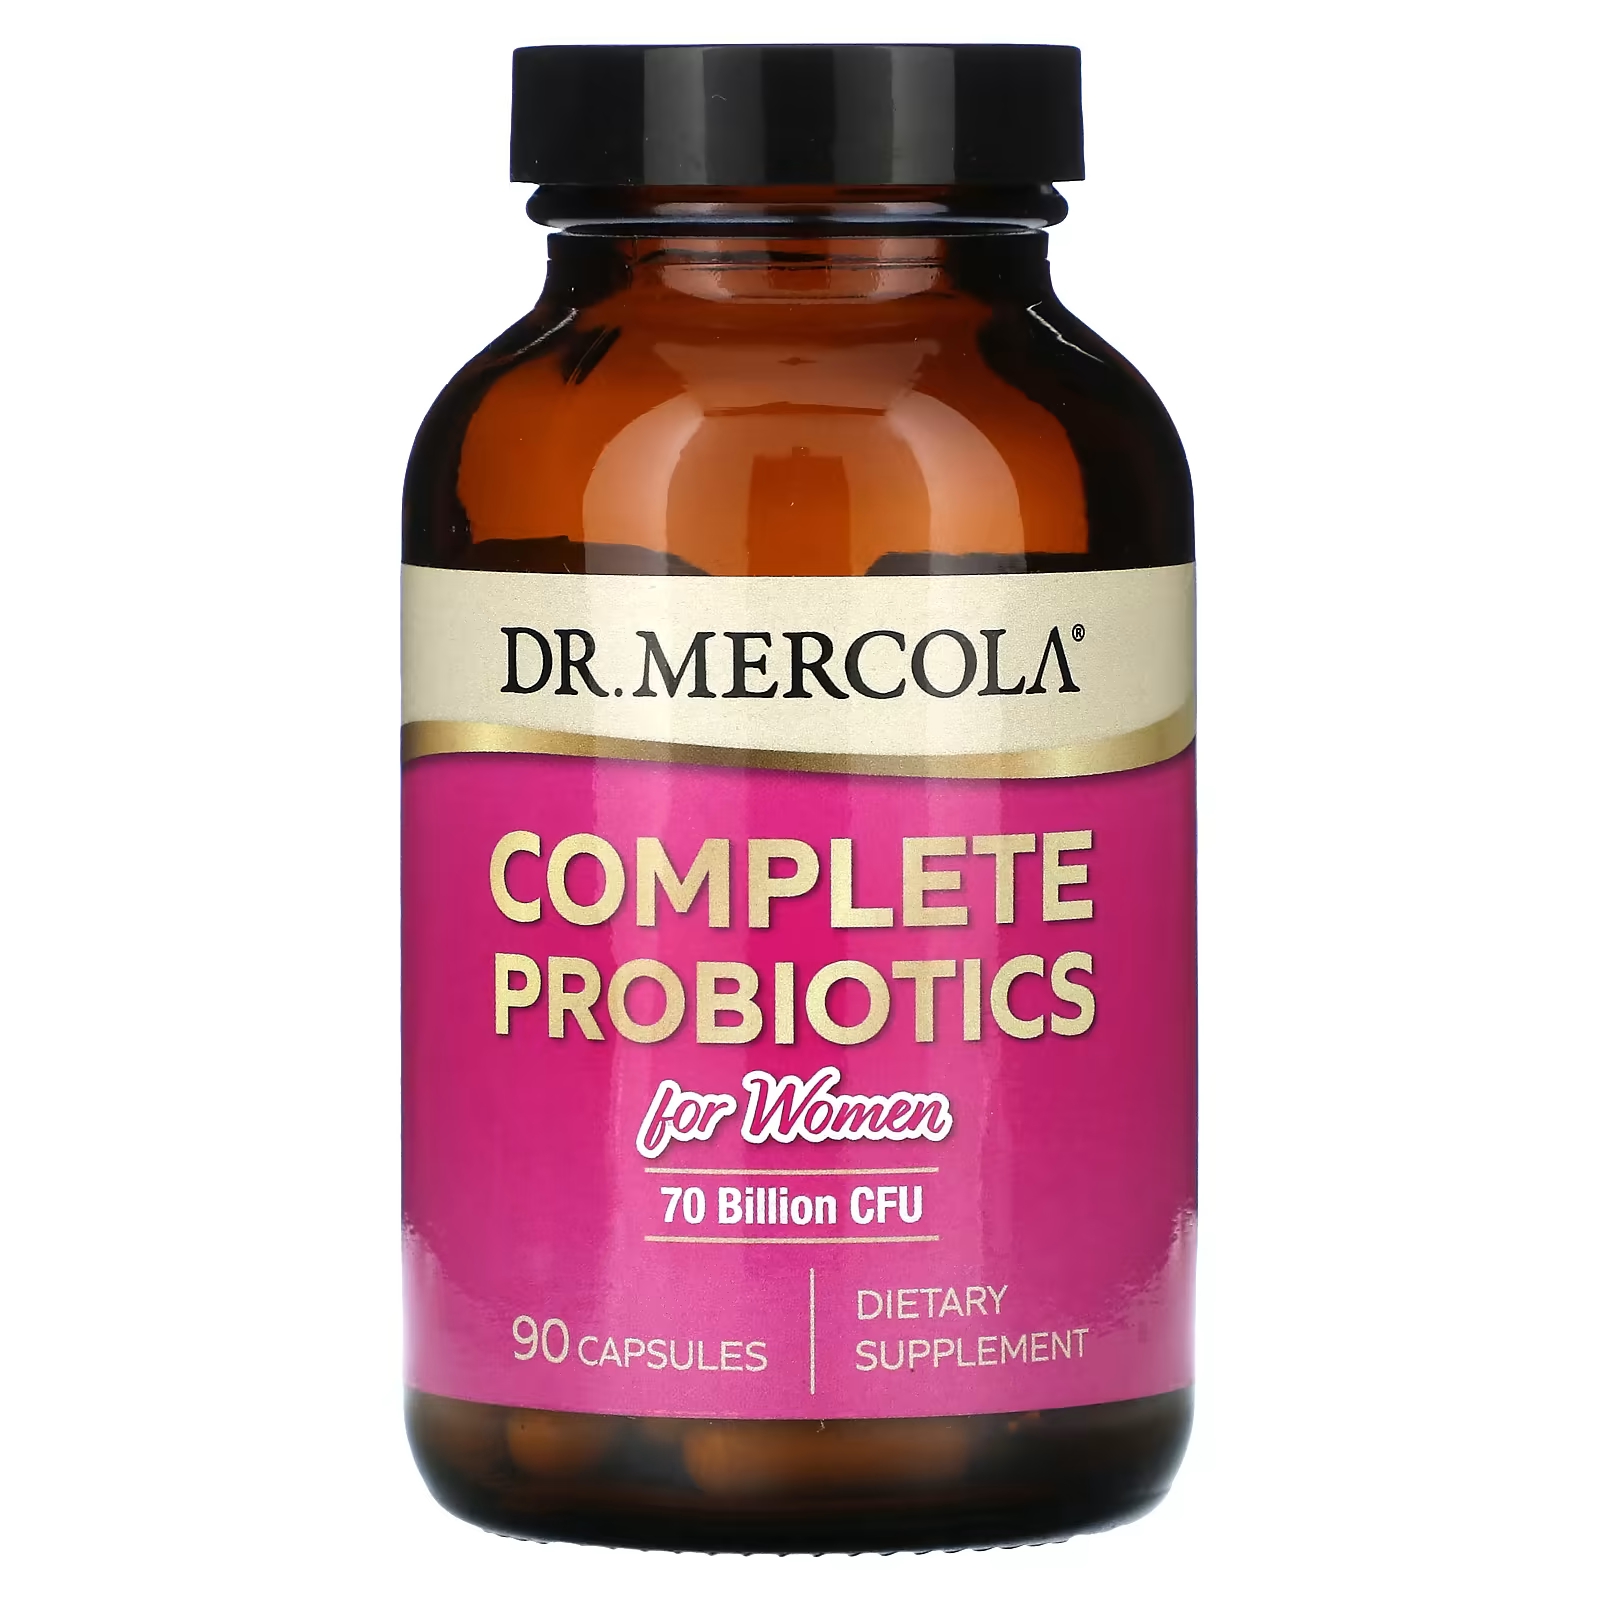 Комплексные пробиотики Dr. Mercola для женщин, 70 миллиардов КОЕ, 90 капсул dr mercola ферменты люмброкиназы для пищеварения 30 капсул